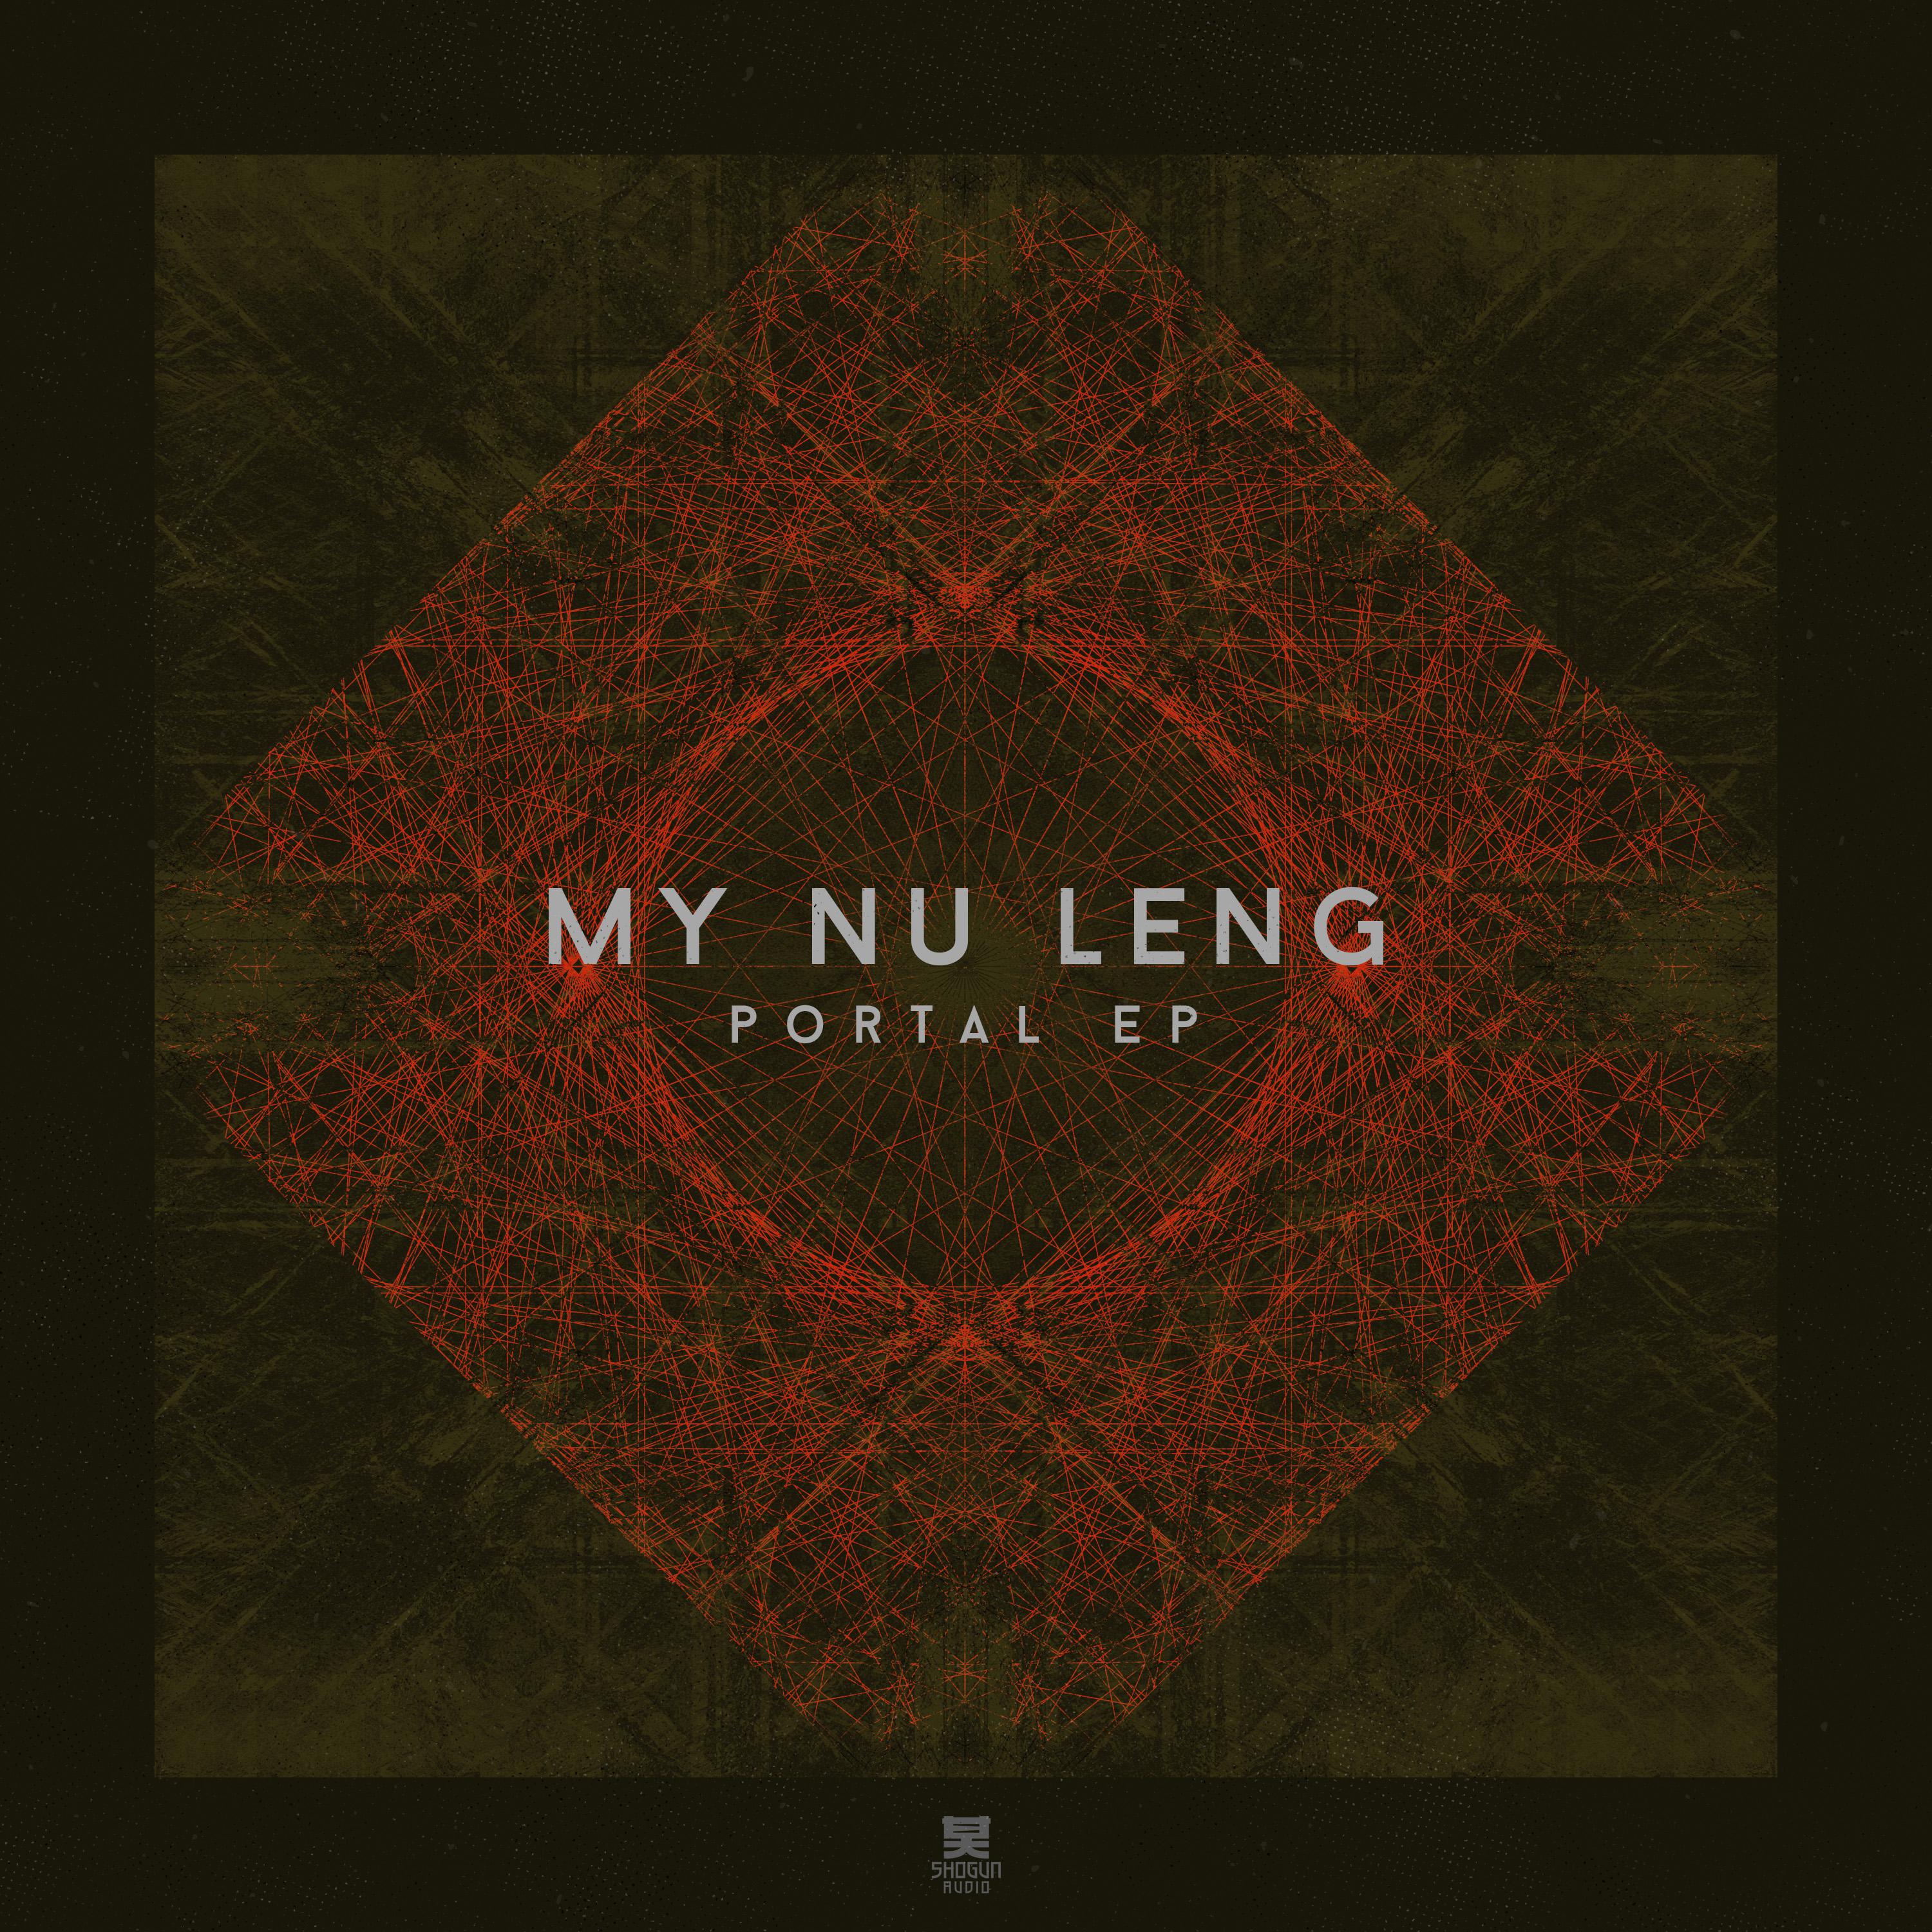 My Nu Leng - The Terrace